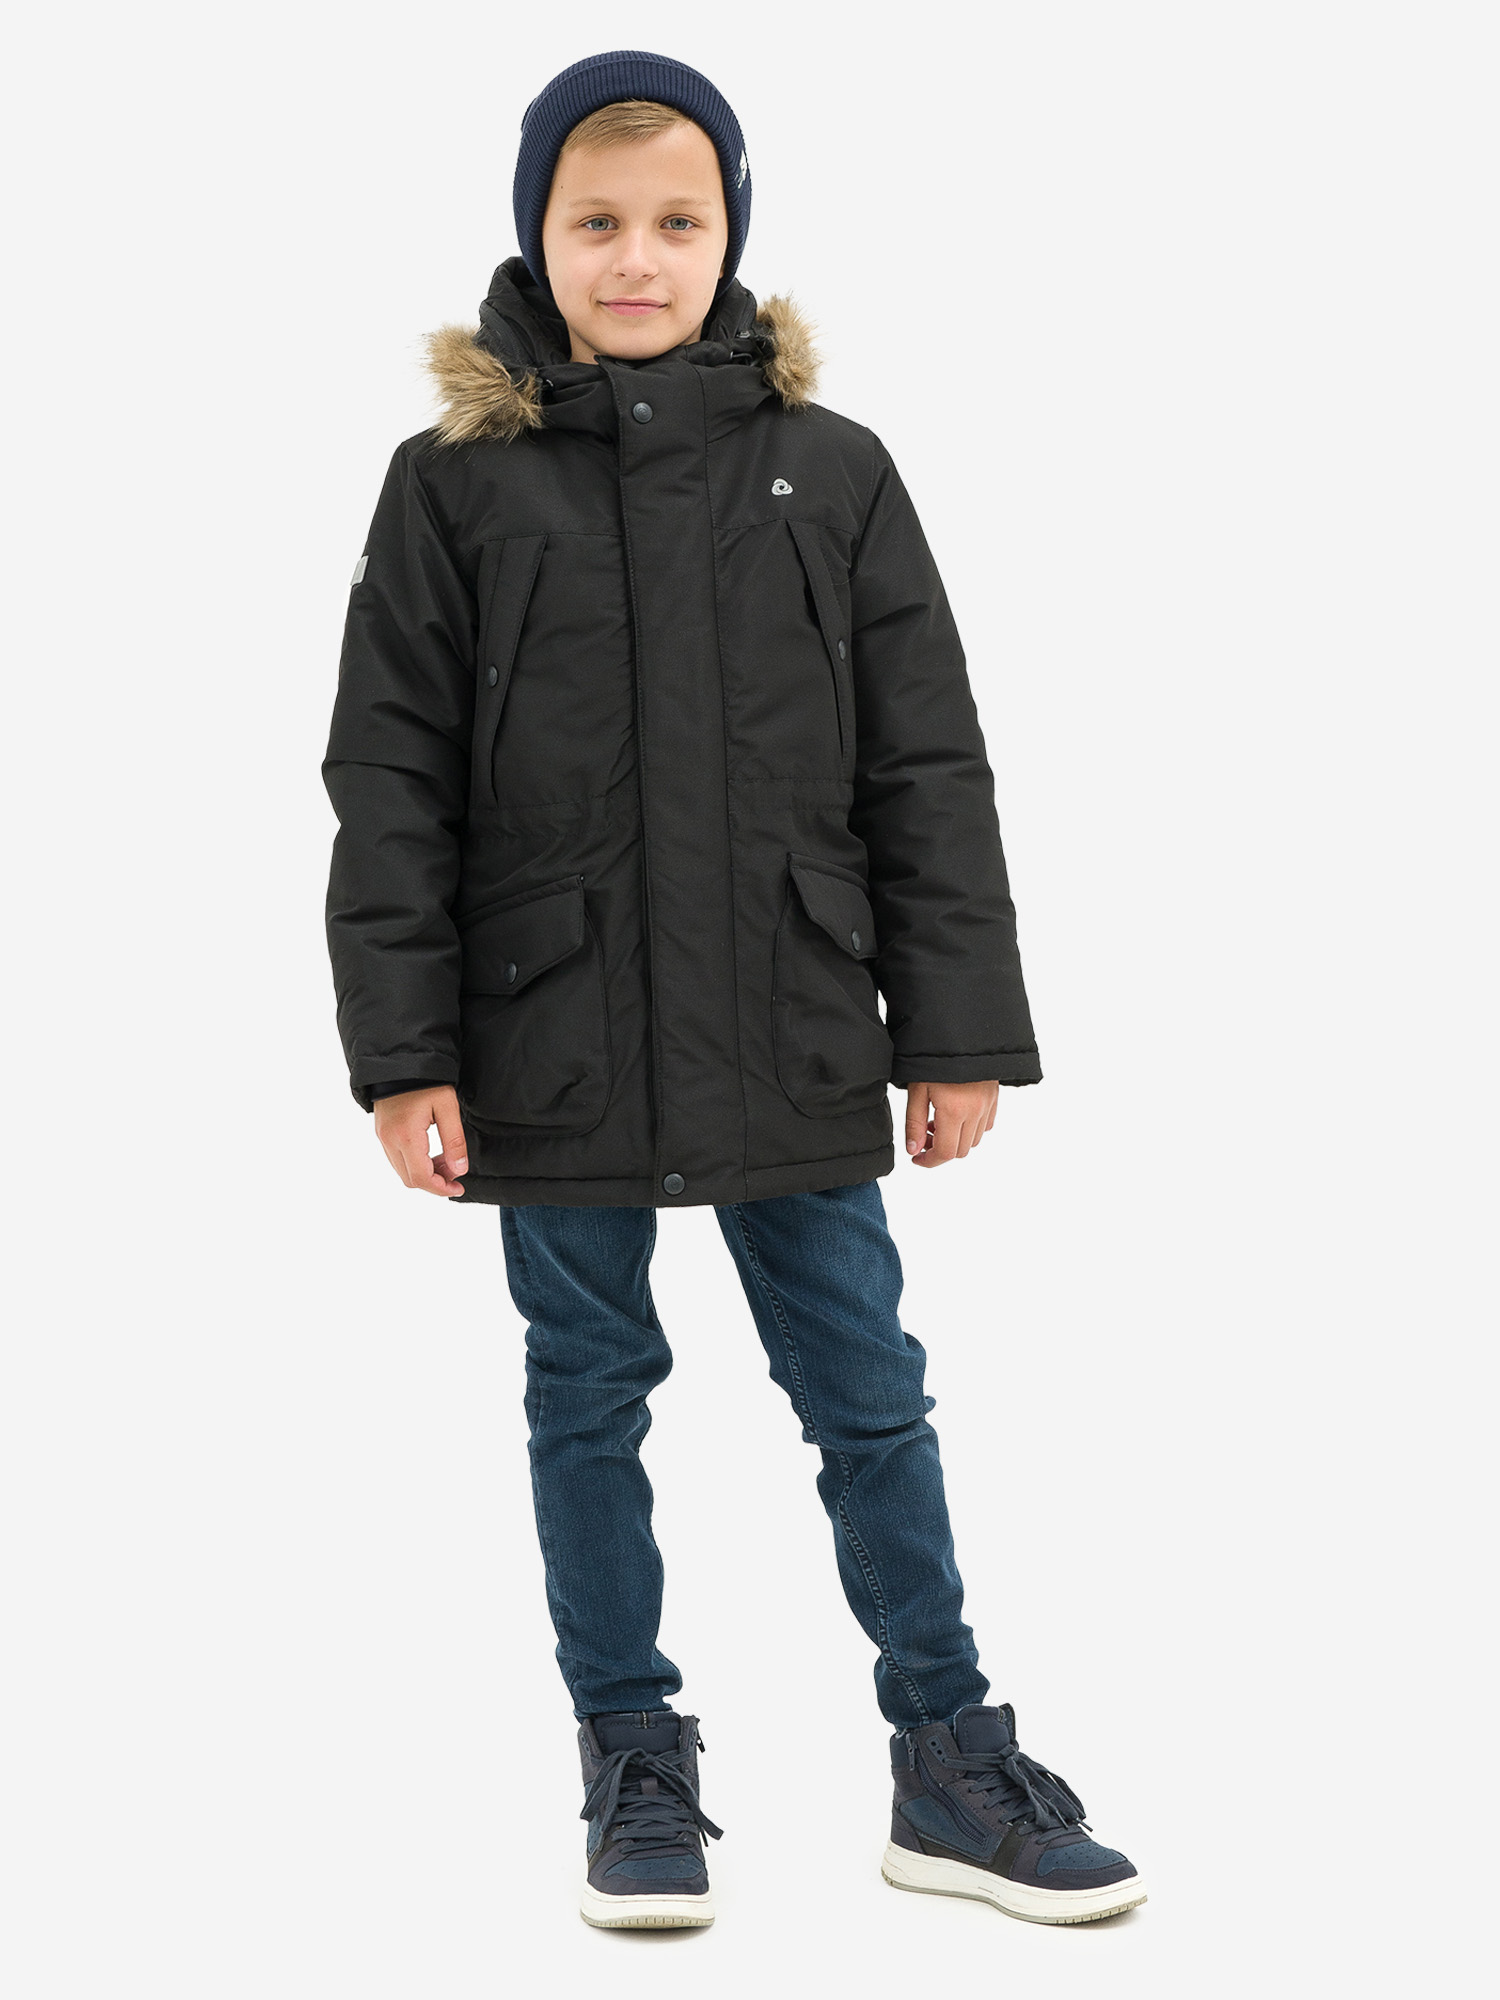 Куртка детская зимняя CosmoTex, Черный valianly парка зимняя подростковая для мальчика 9343